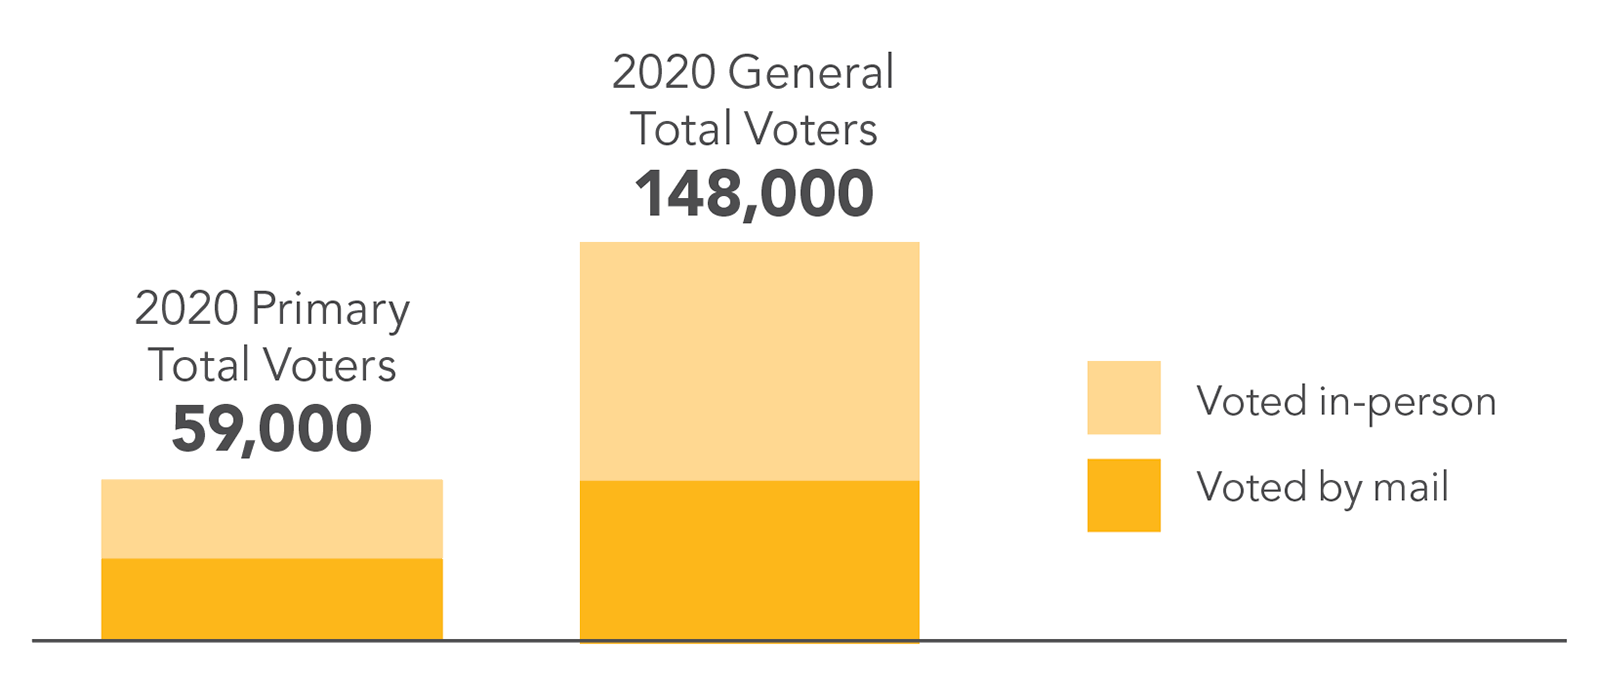 对比2020年坎伯兰县选民总数的柱状图:5.9万名选民参加初选，14.8万名选民参加大选。